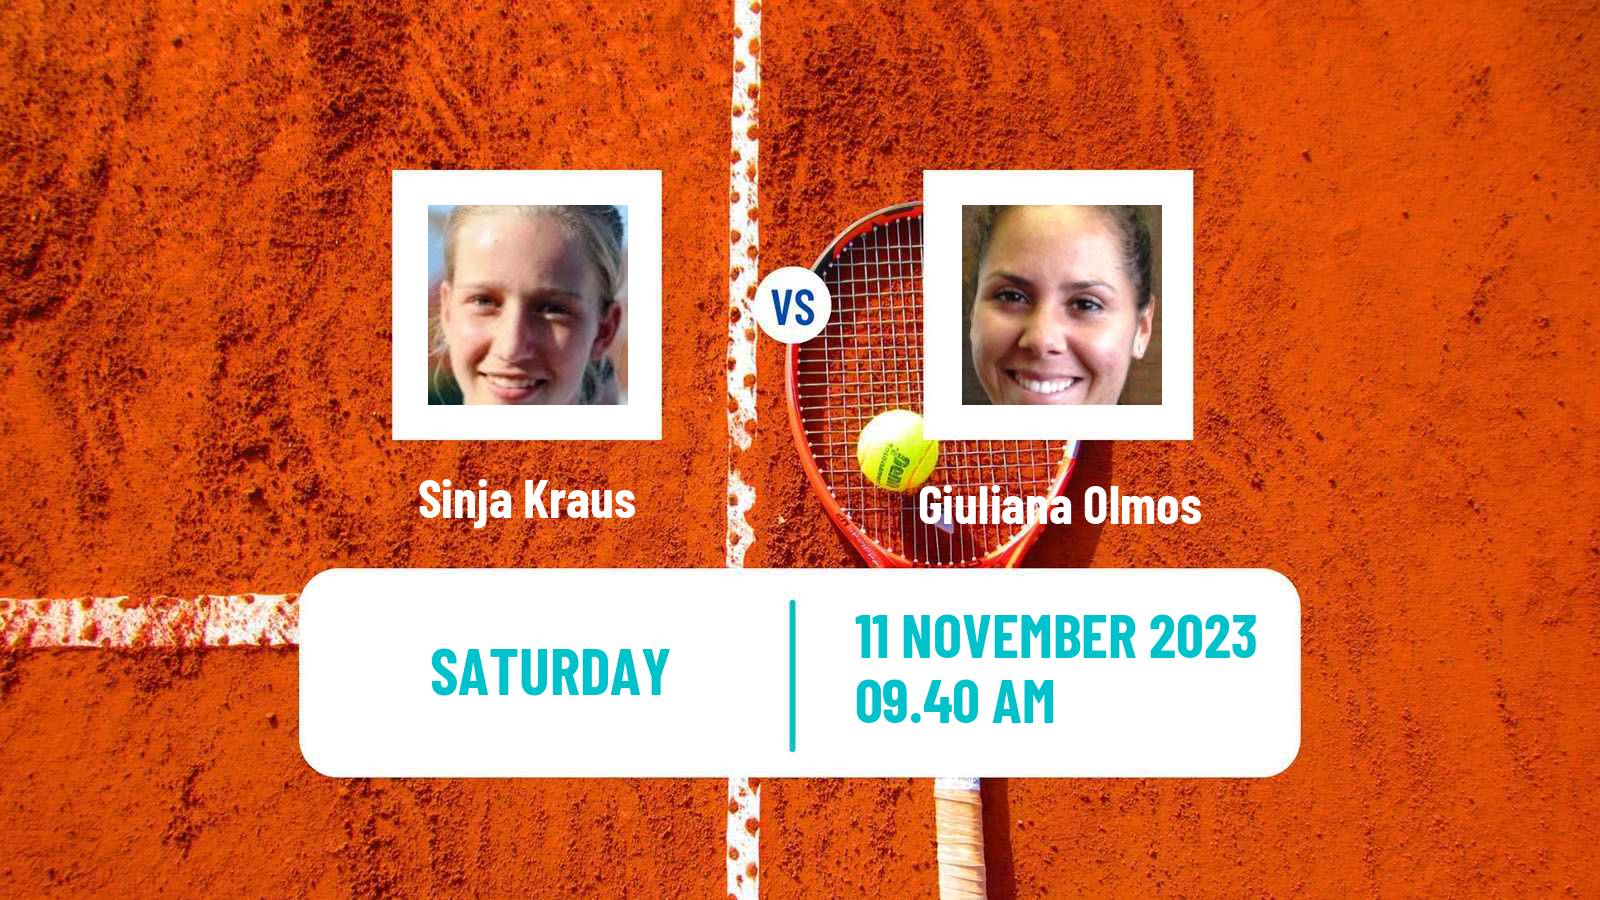 Tennis WTA Billie Jean King Cup World Group Sinja Kraus - Giuliana Olmos